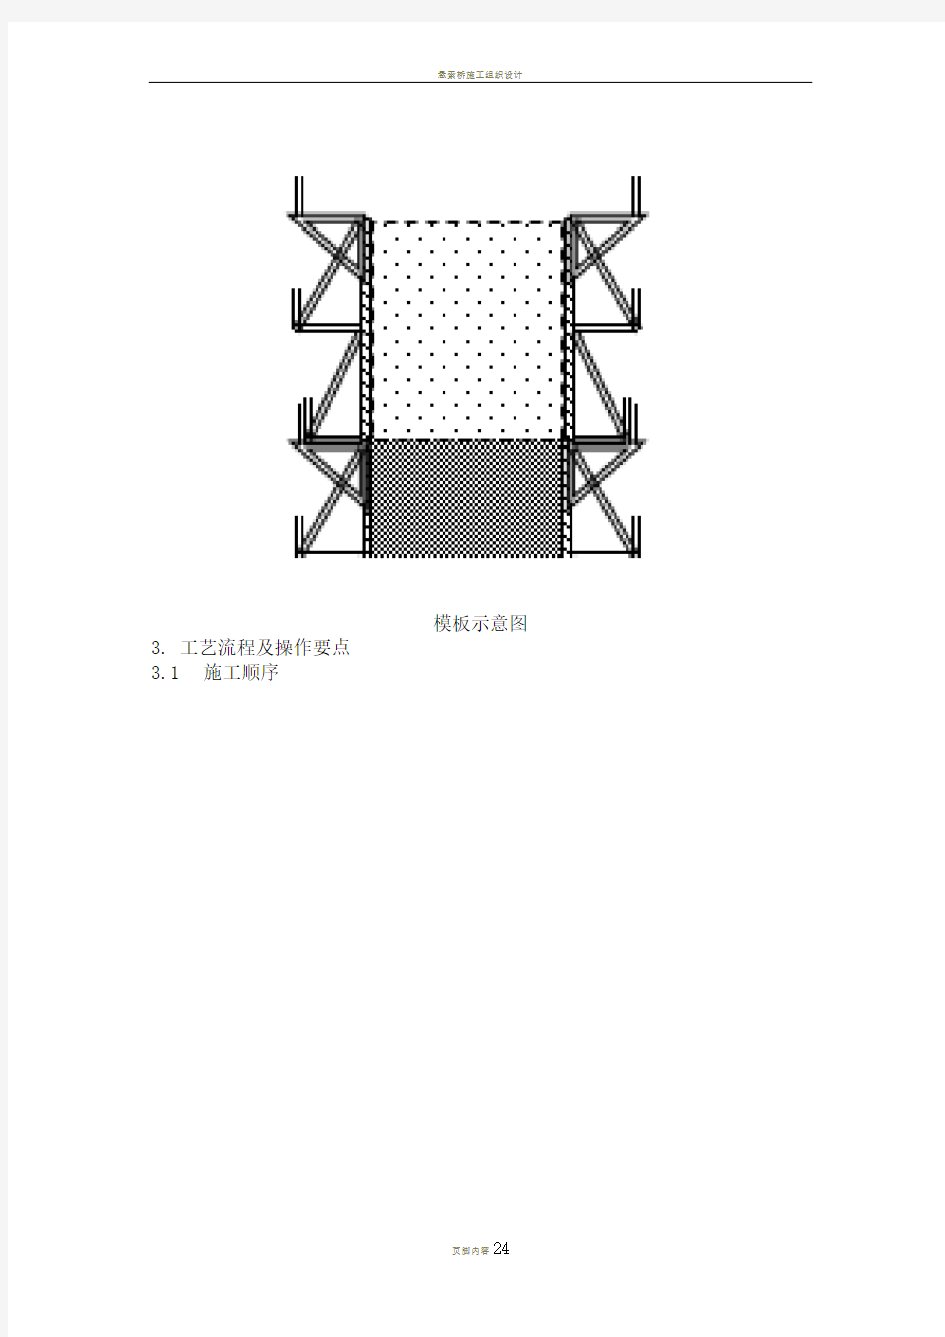 悬索桥索塔塔吊提升模板施工工法